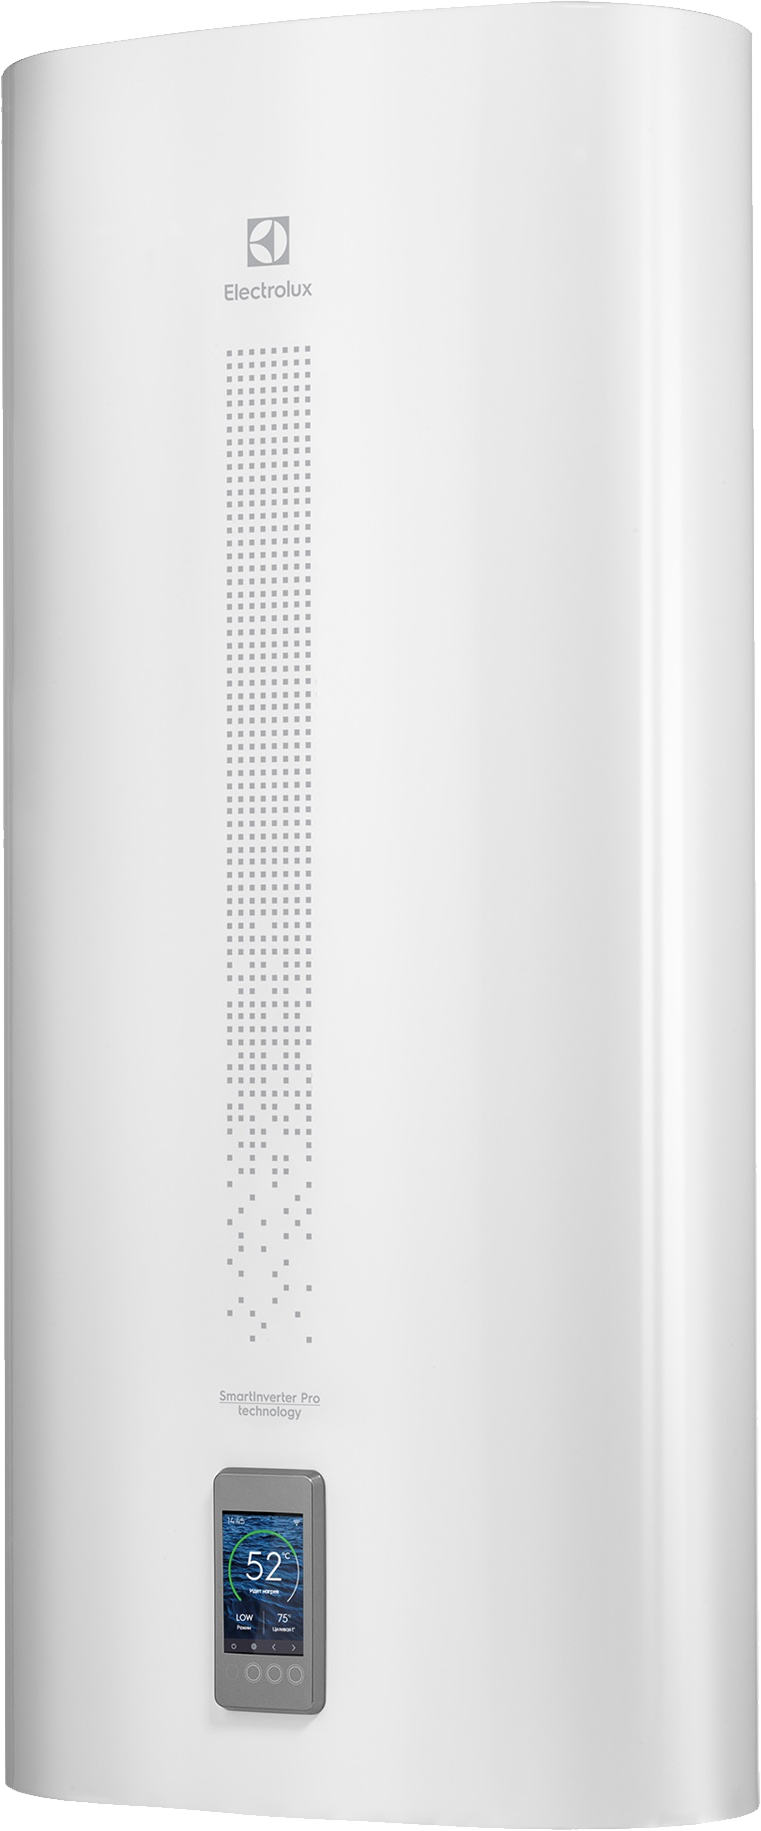 Накопительный водонагреватель Electrolux EWH 50 SmartInverter PRO электрический + акустическая колонка Electrolux Mini Beat беспроводная - фотография № 1